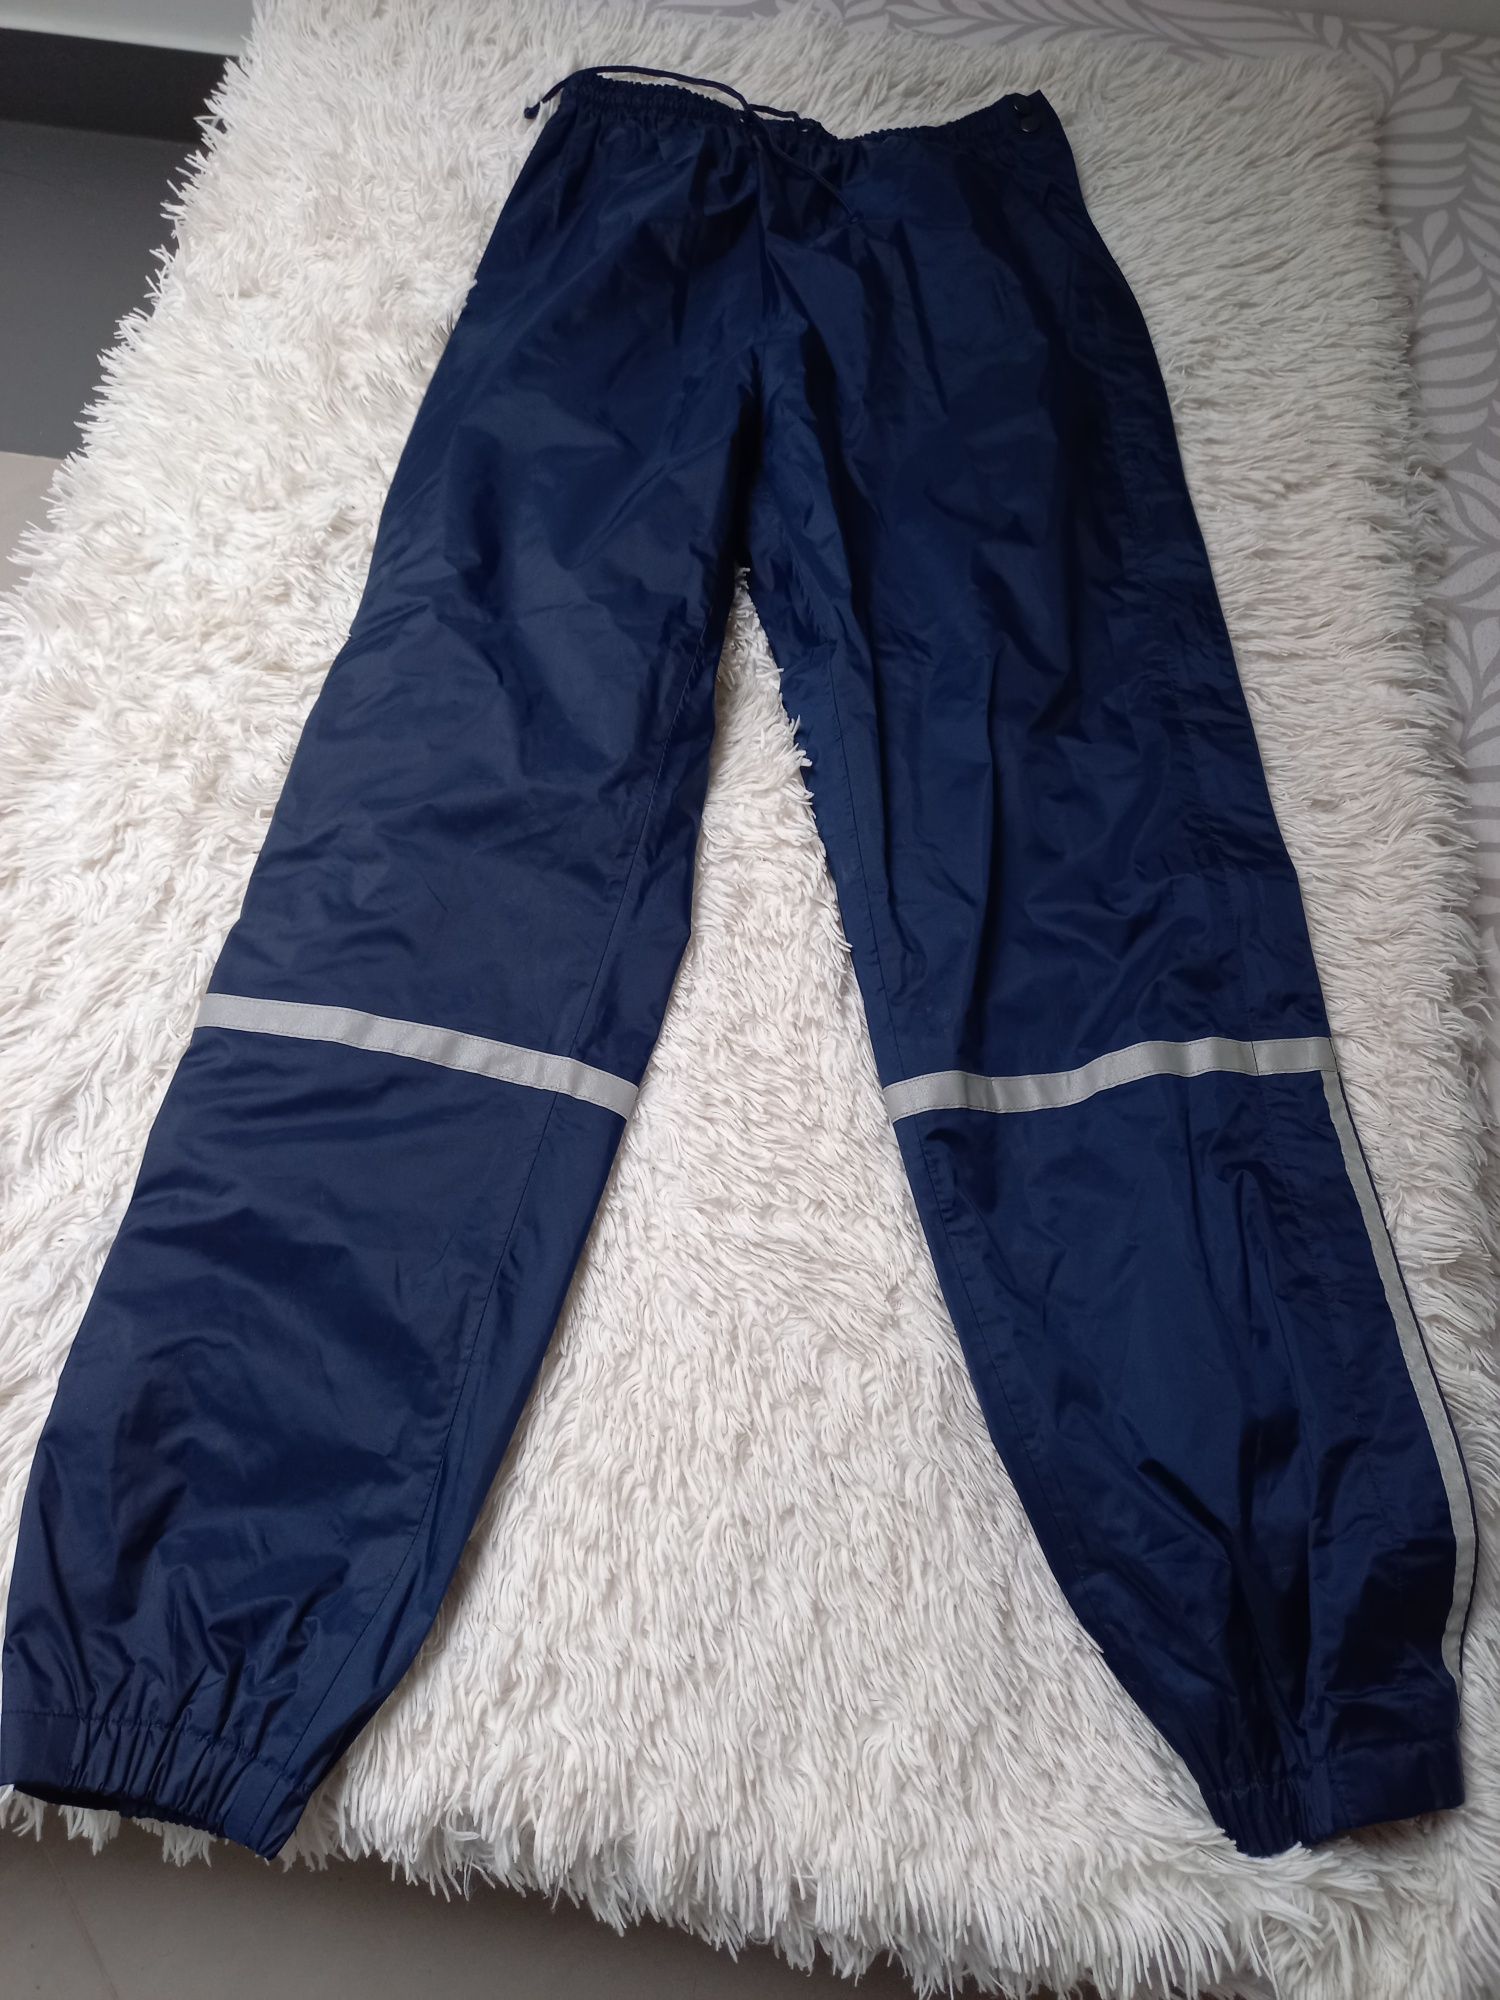 Spodnie narciarskie ortalionowe niebieskie męskie rozmiar M